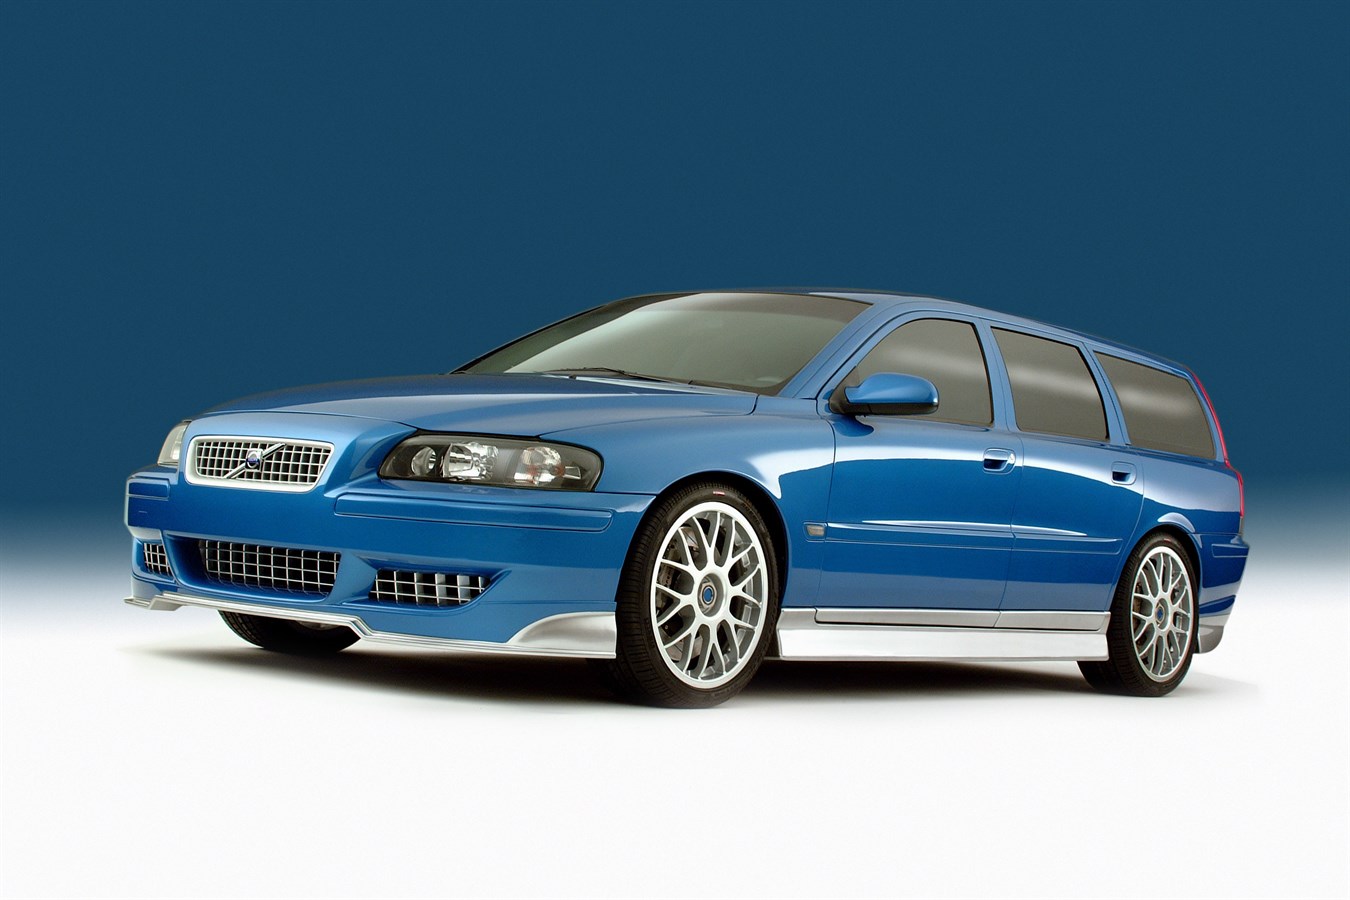 Volvo, prototipo di vettura a elevate prestazioni PCC2 (Performance Concept Car No. 2), 2002; il prototipo PCC2 era un modello station wagon che sottolineava la disponibilità di prestazioni molto elevate anche in un veicolo per famiglie.